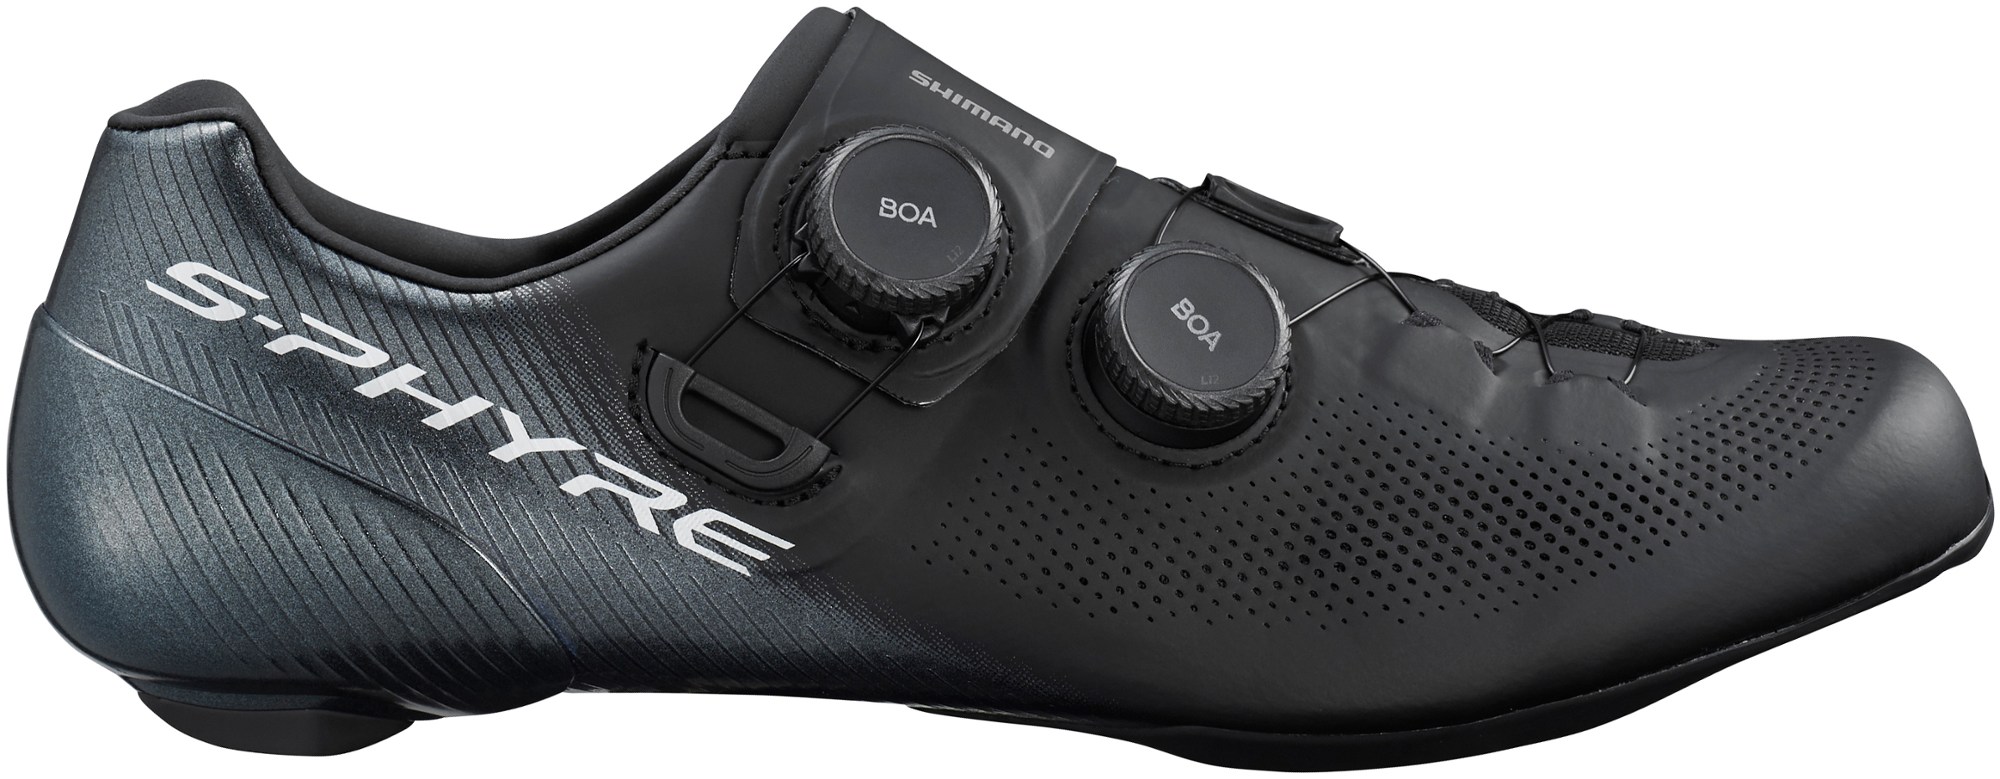 Велосипедная обувь RC9 — мужские Shimano, черный